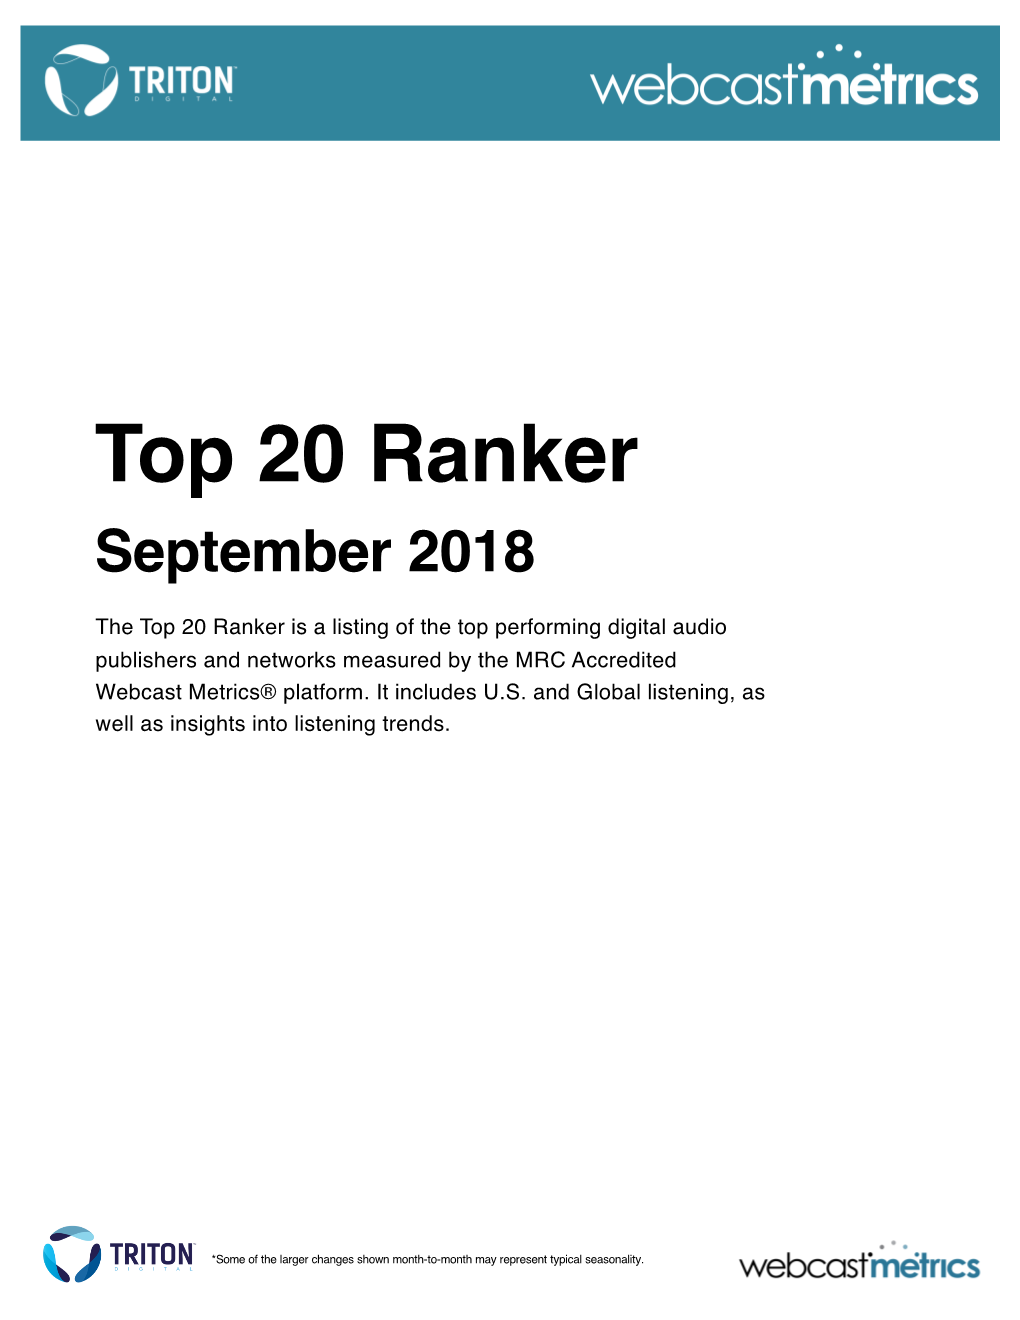 Top 20 Ranker September 2018